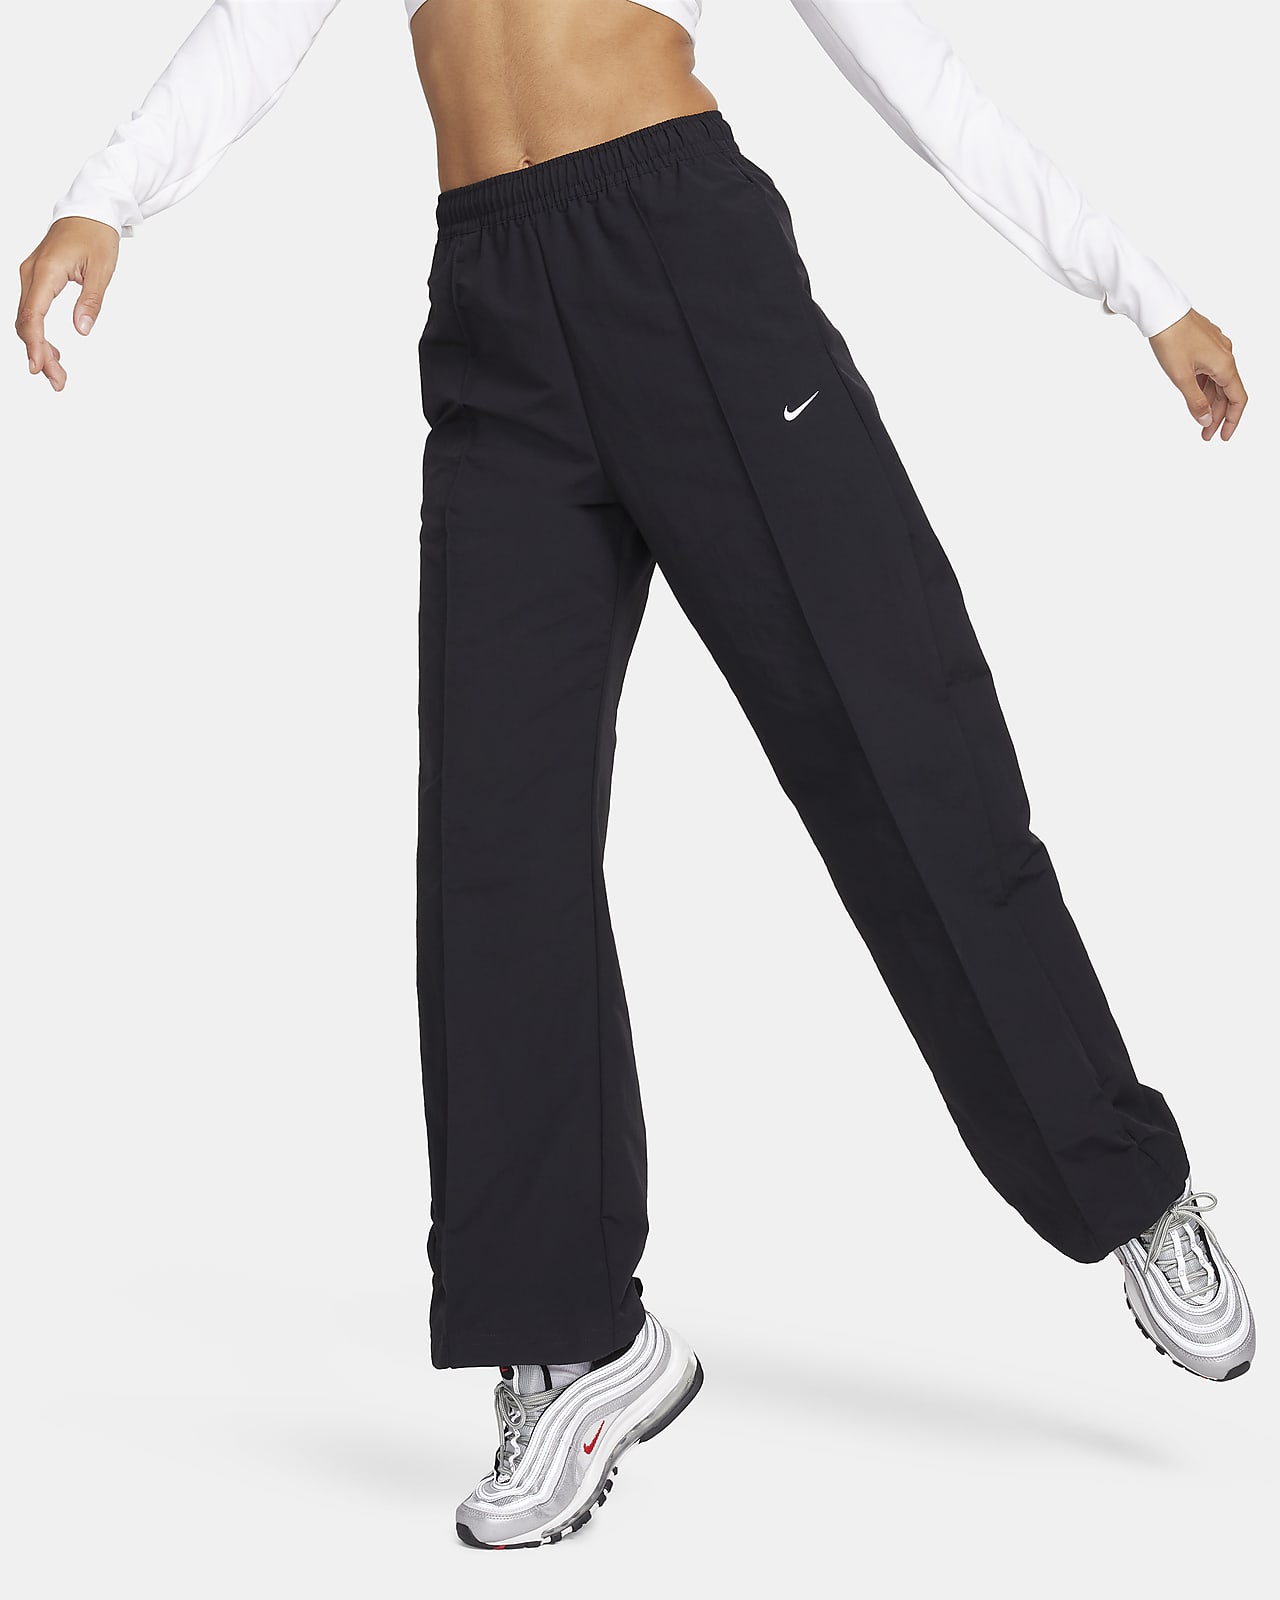 Γυναικείο παντελόνι μεσαίου ύψους με ανοιχτό τελείωμα Nike Sportswear Everything Wovens